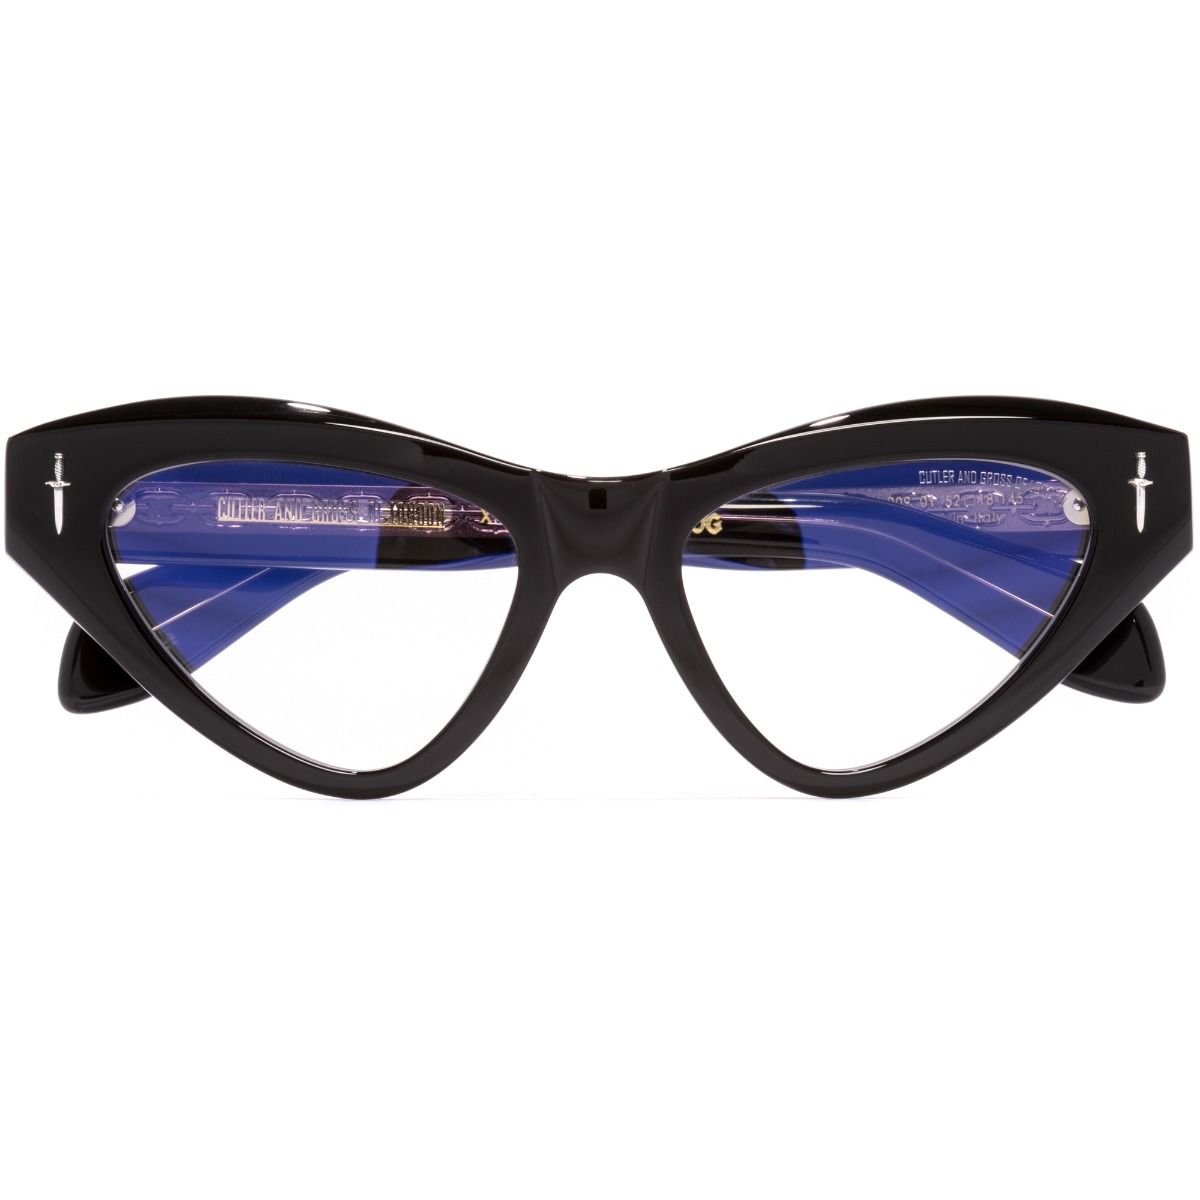 The Great Frog Mini Cat Eye Optical Glasses-Black